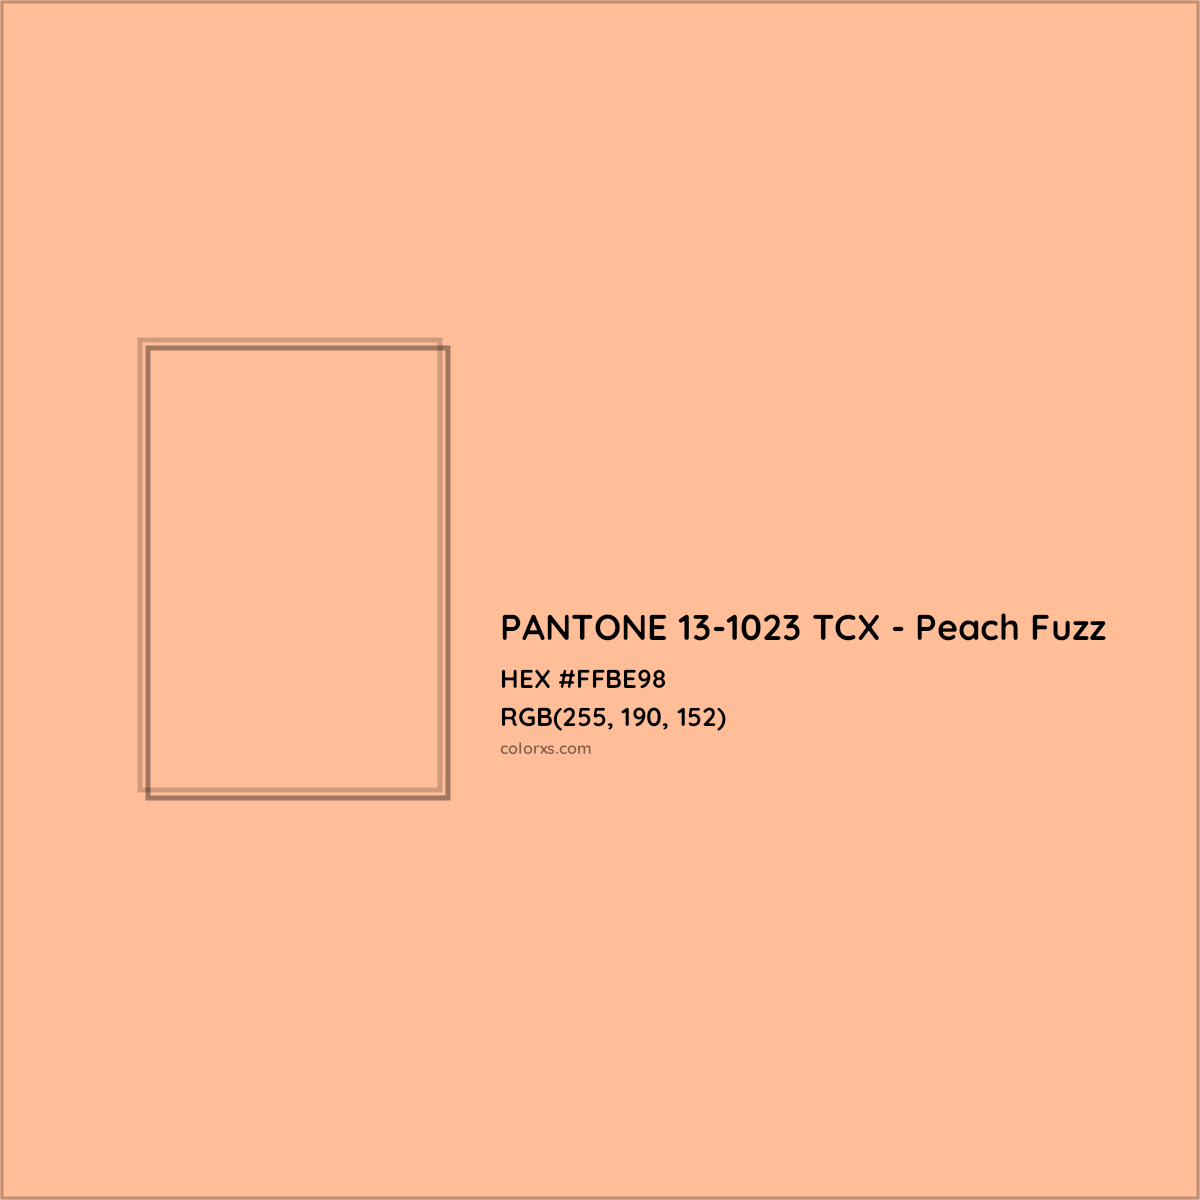 About PANTONE 13-1023 TCX - Peach Fuzz Color - Color codes, similar ...